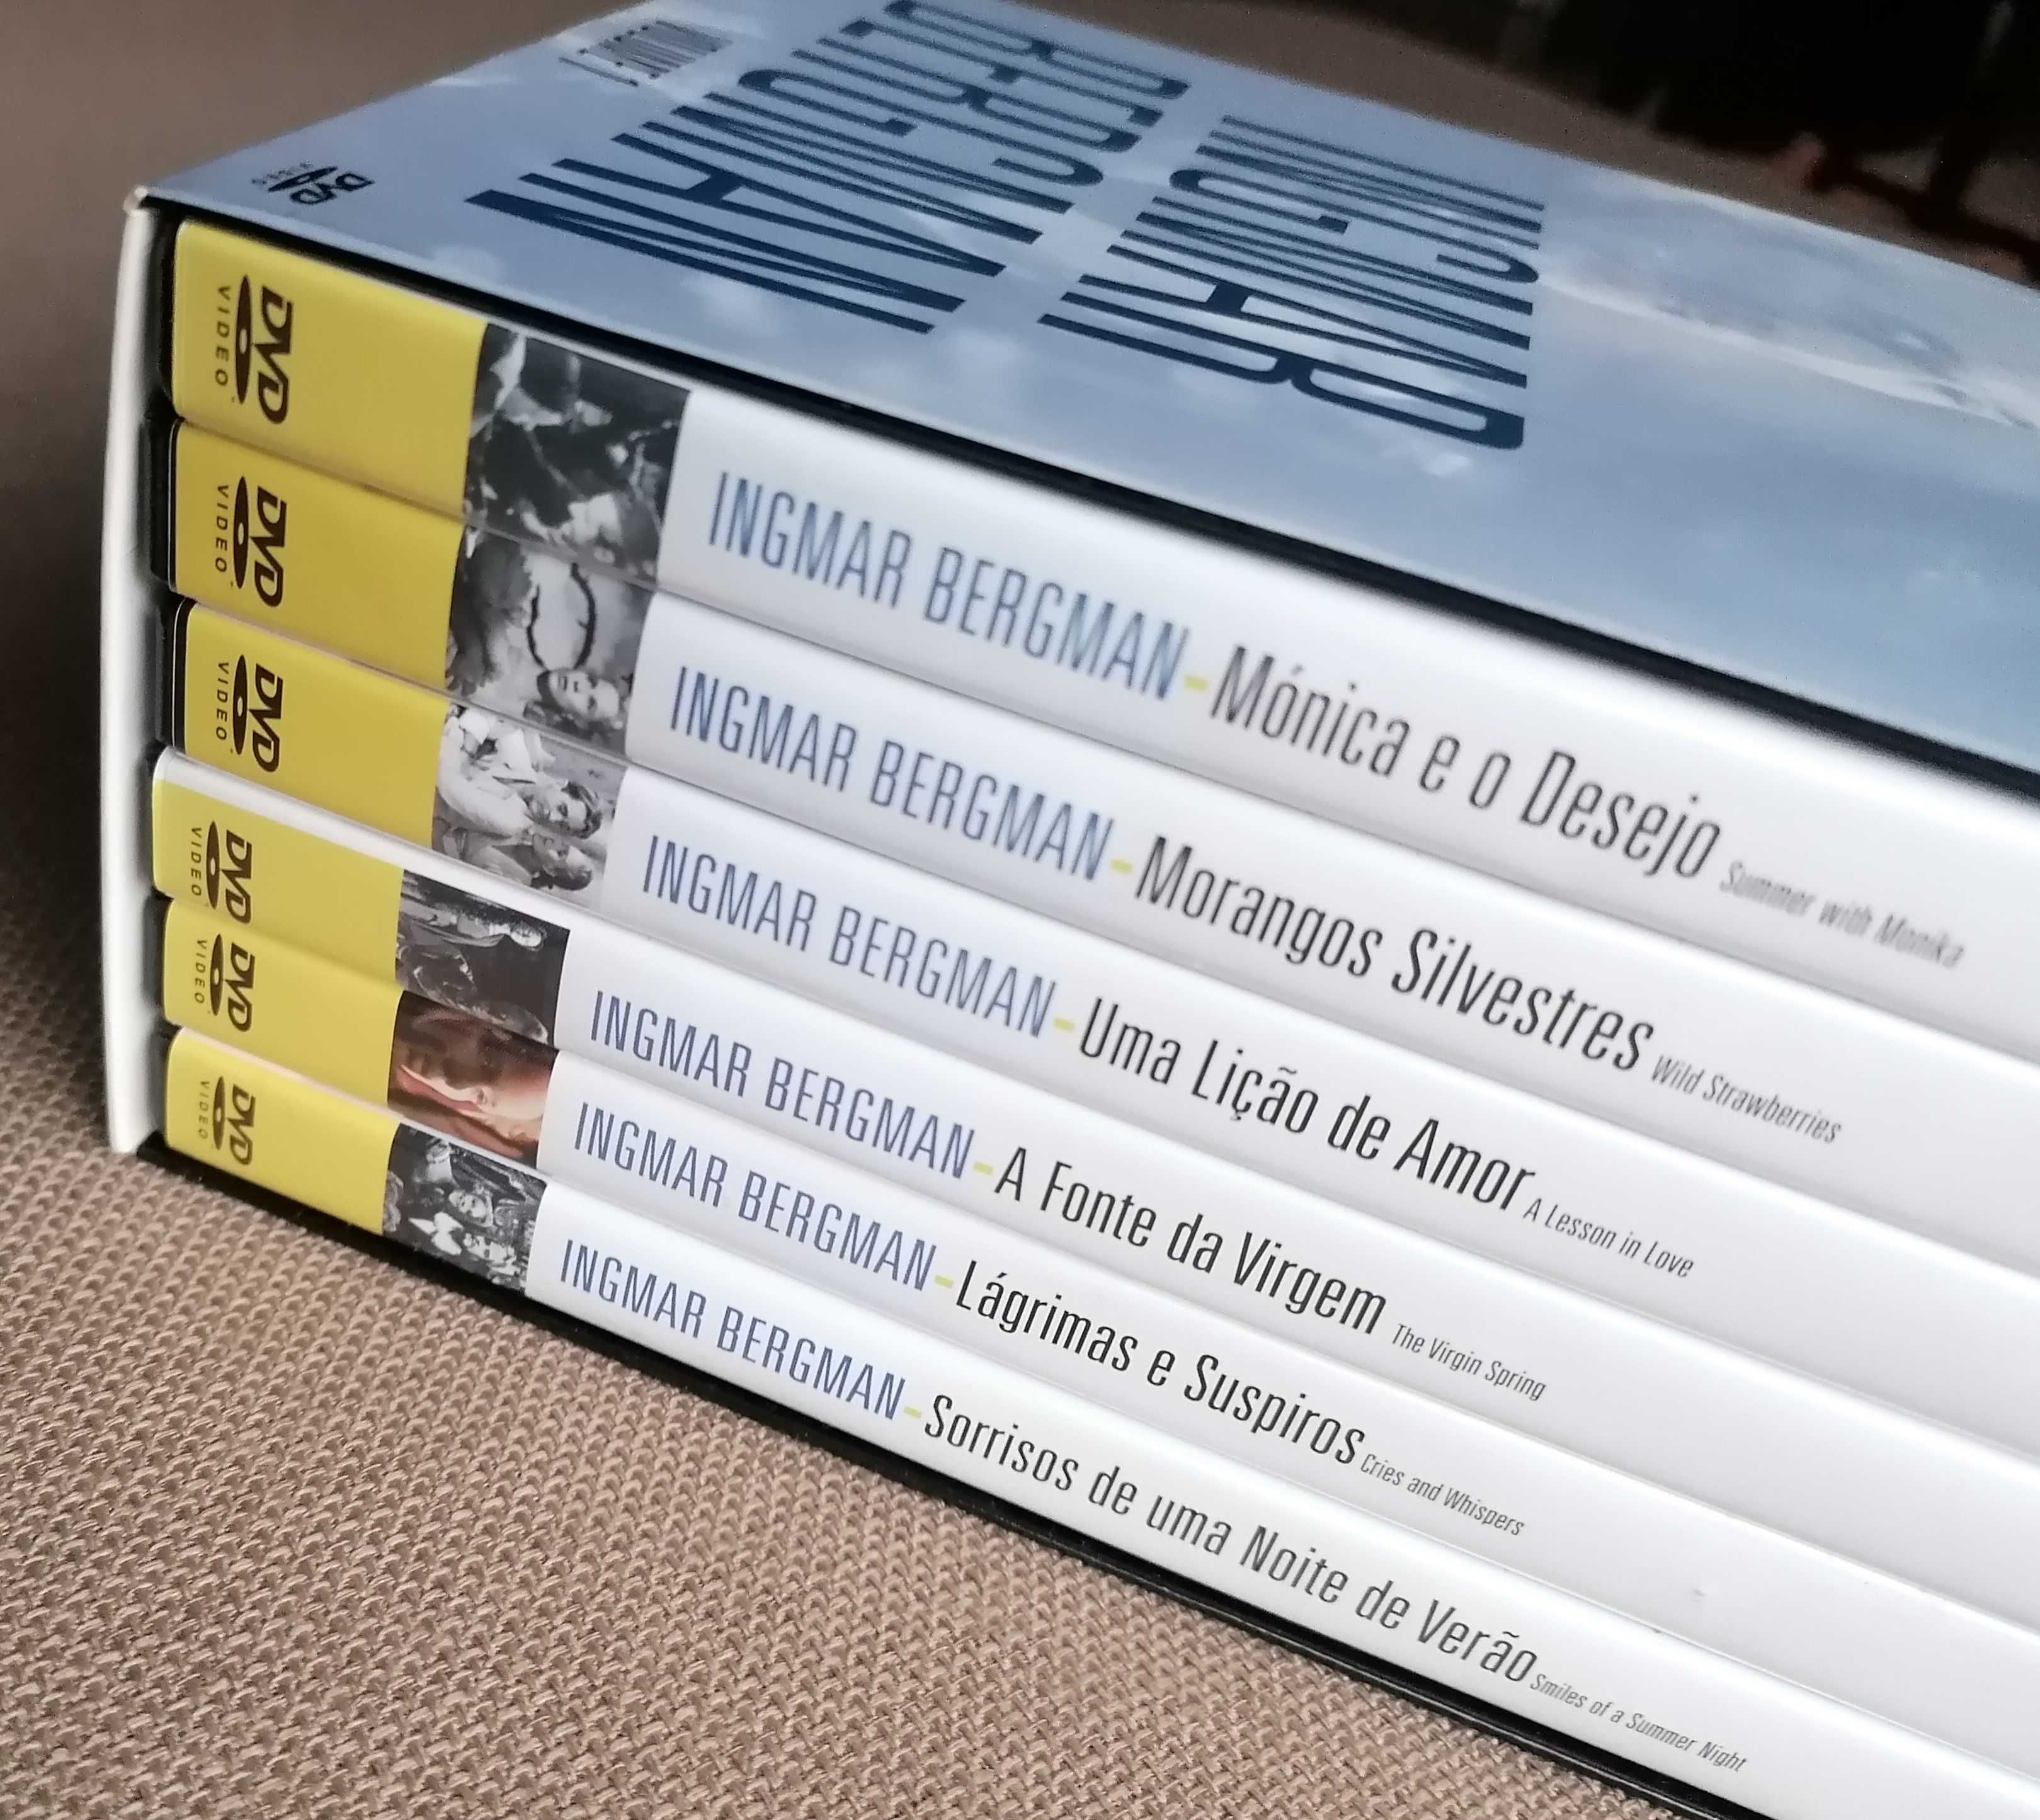 Ingmar Bergman - caixa 6 dvds